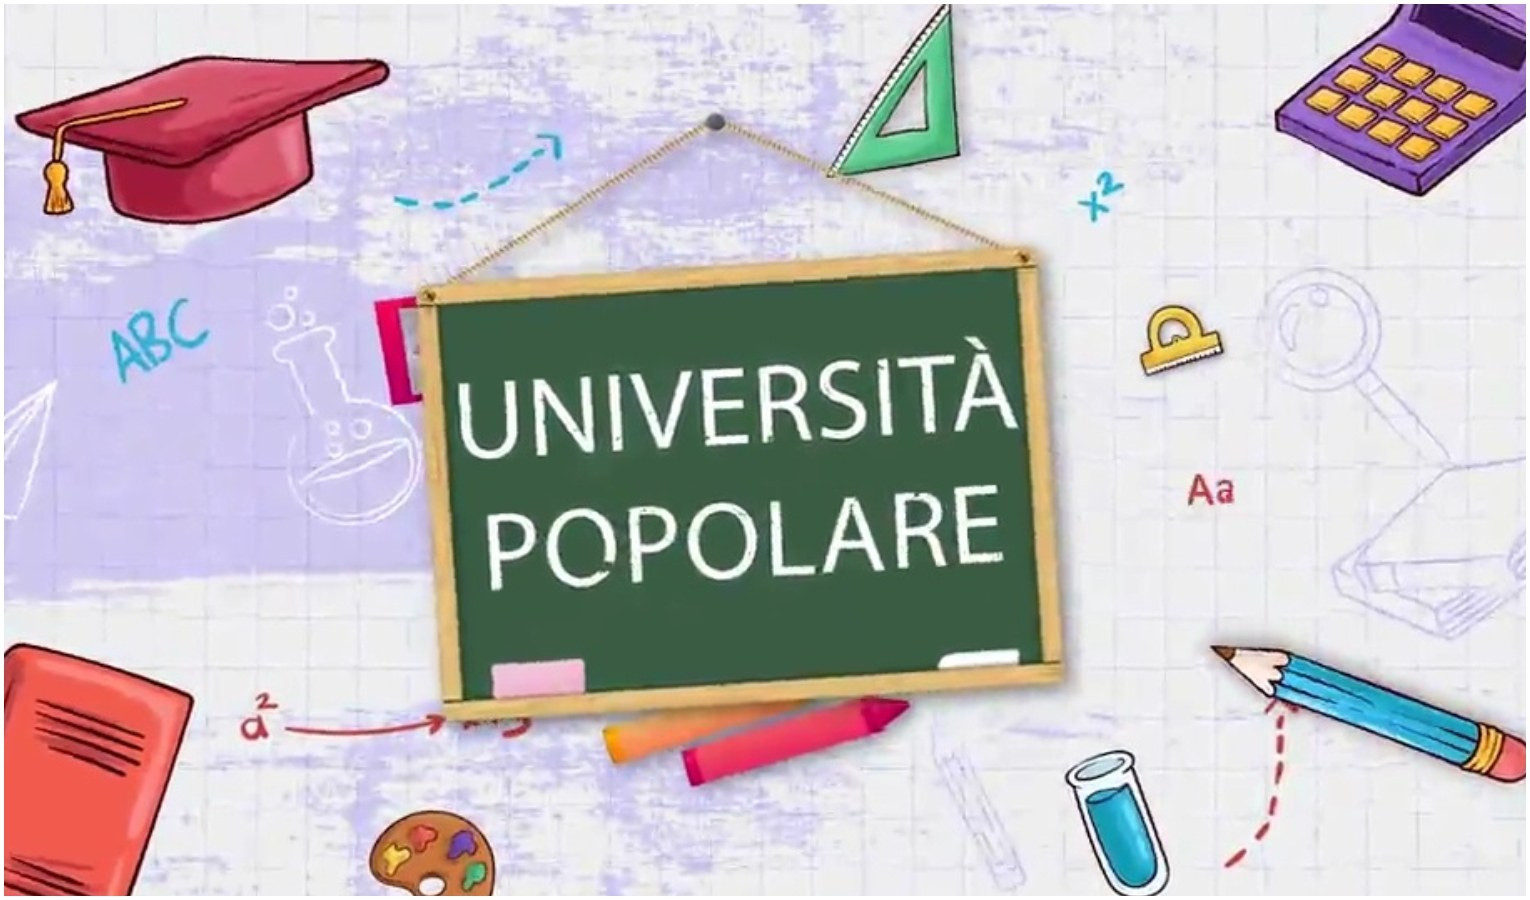 Università popolare - Il cielo sopra di noi